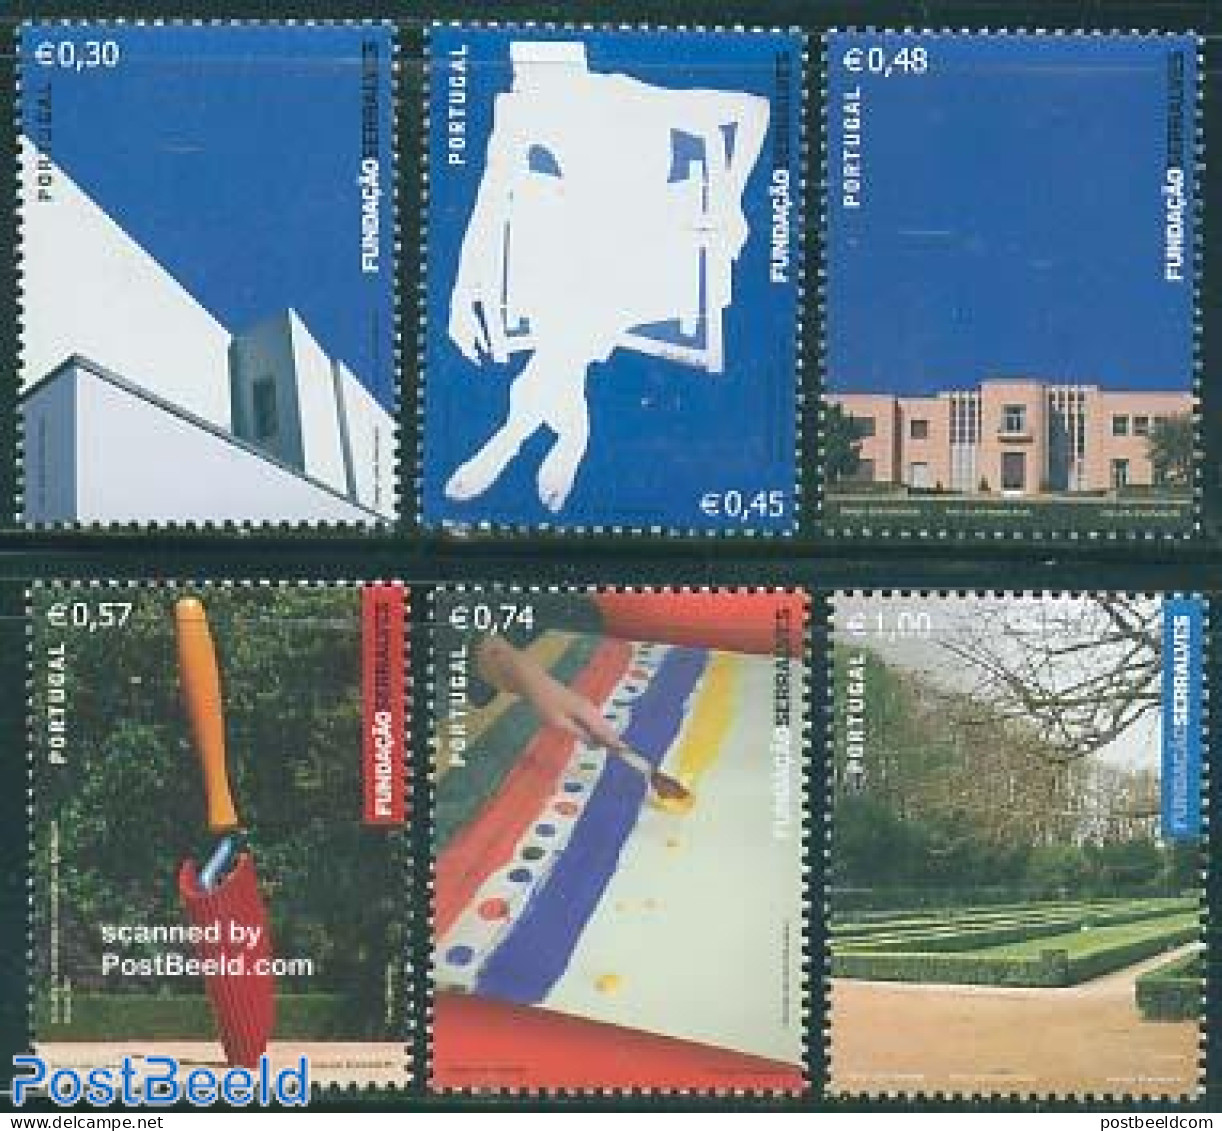 Portugal 2005 Serralves Foundation 6v, Mint NH, Art - Modern Art (1850-present) - Museums - Sculpture - Unused Stamps